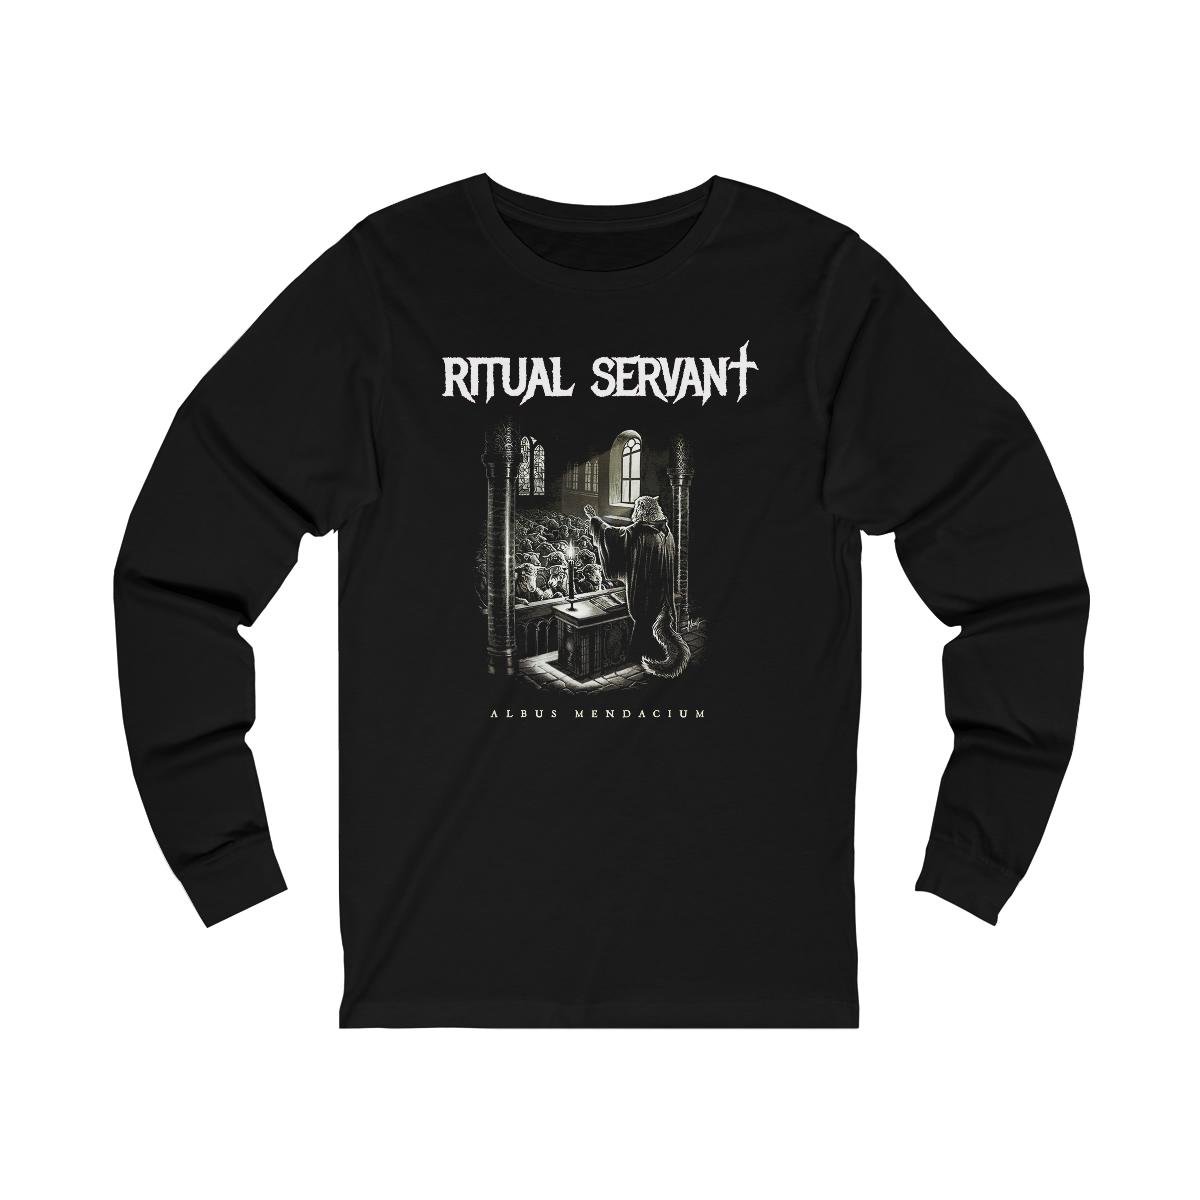 Ritual Servant – Albus Mendacium Long Sleeve Tshirt